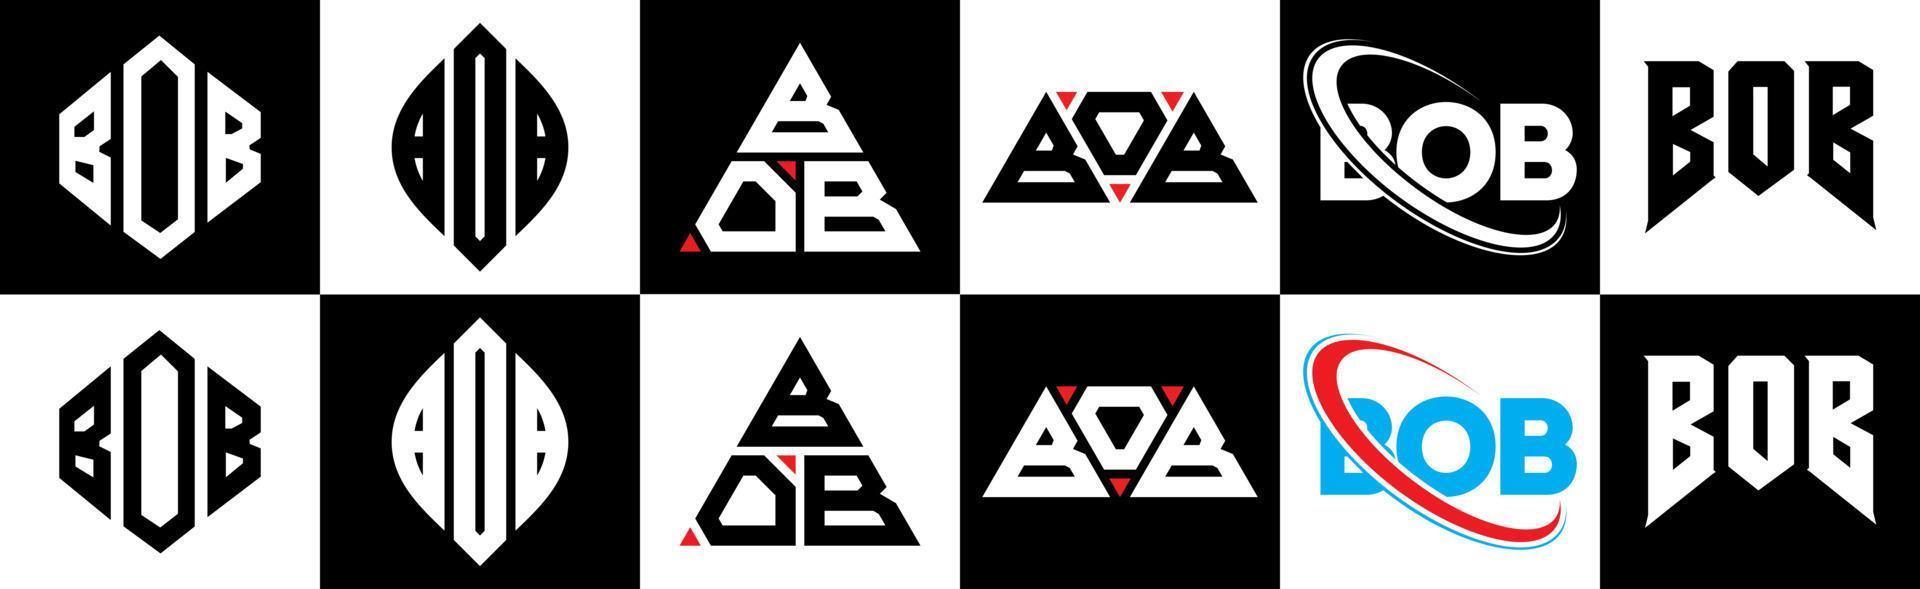 Bob-Buchstaben-Logo-Design in sechs Stilen. Bob-Polygon, Kreis, Dreieck, Sechseck, flacher und einfacher Stil mit schwarz-weißem Buchstabenlogo in einer Zeichenfläche. Bob minimalistisches und klassisches Logo vektor